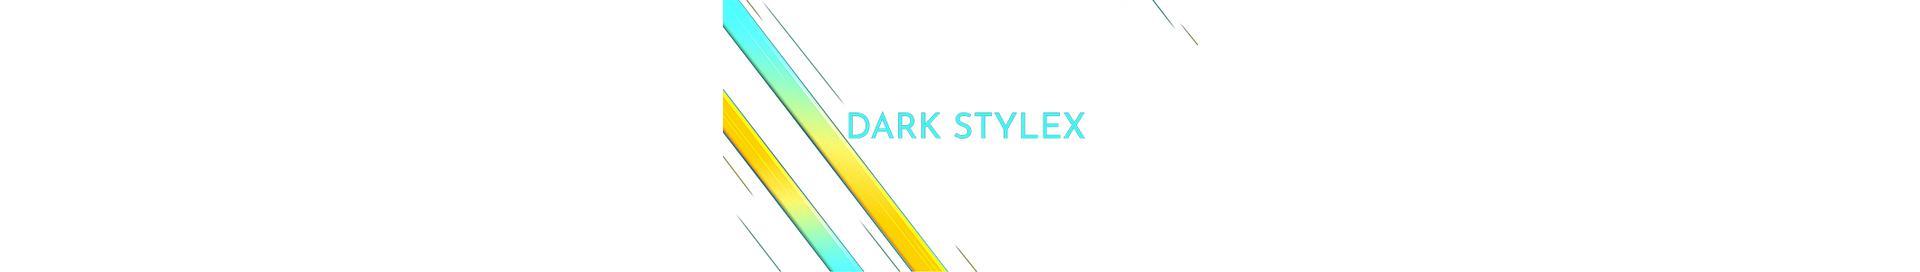 dark_stylex_